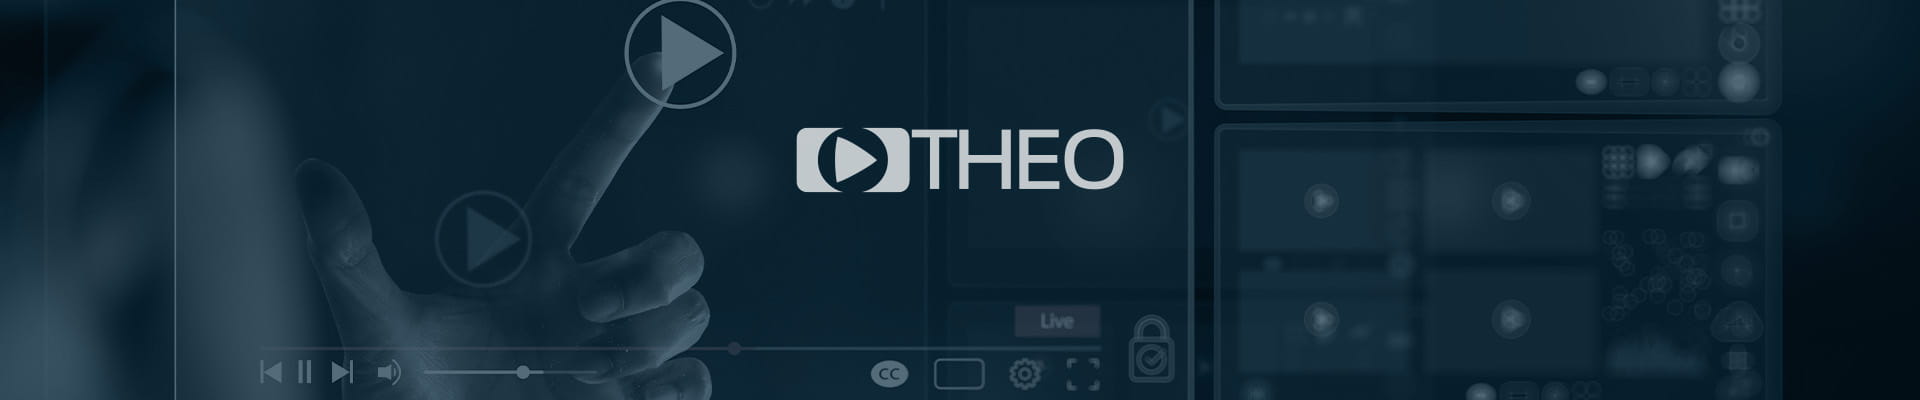 THEO Technologies 社、初となる HTTP ベースの大規模にも対応する リアルタイムビデオ API 「hesp.live」を発表